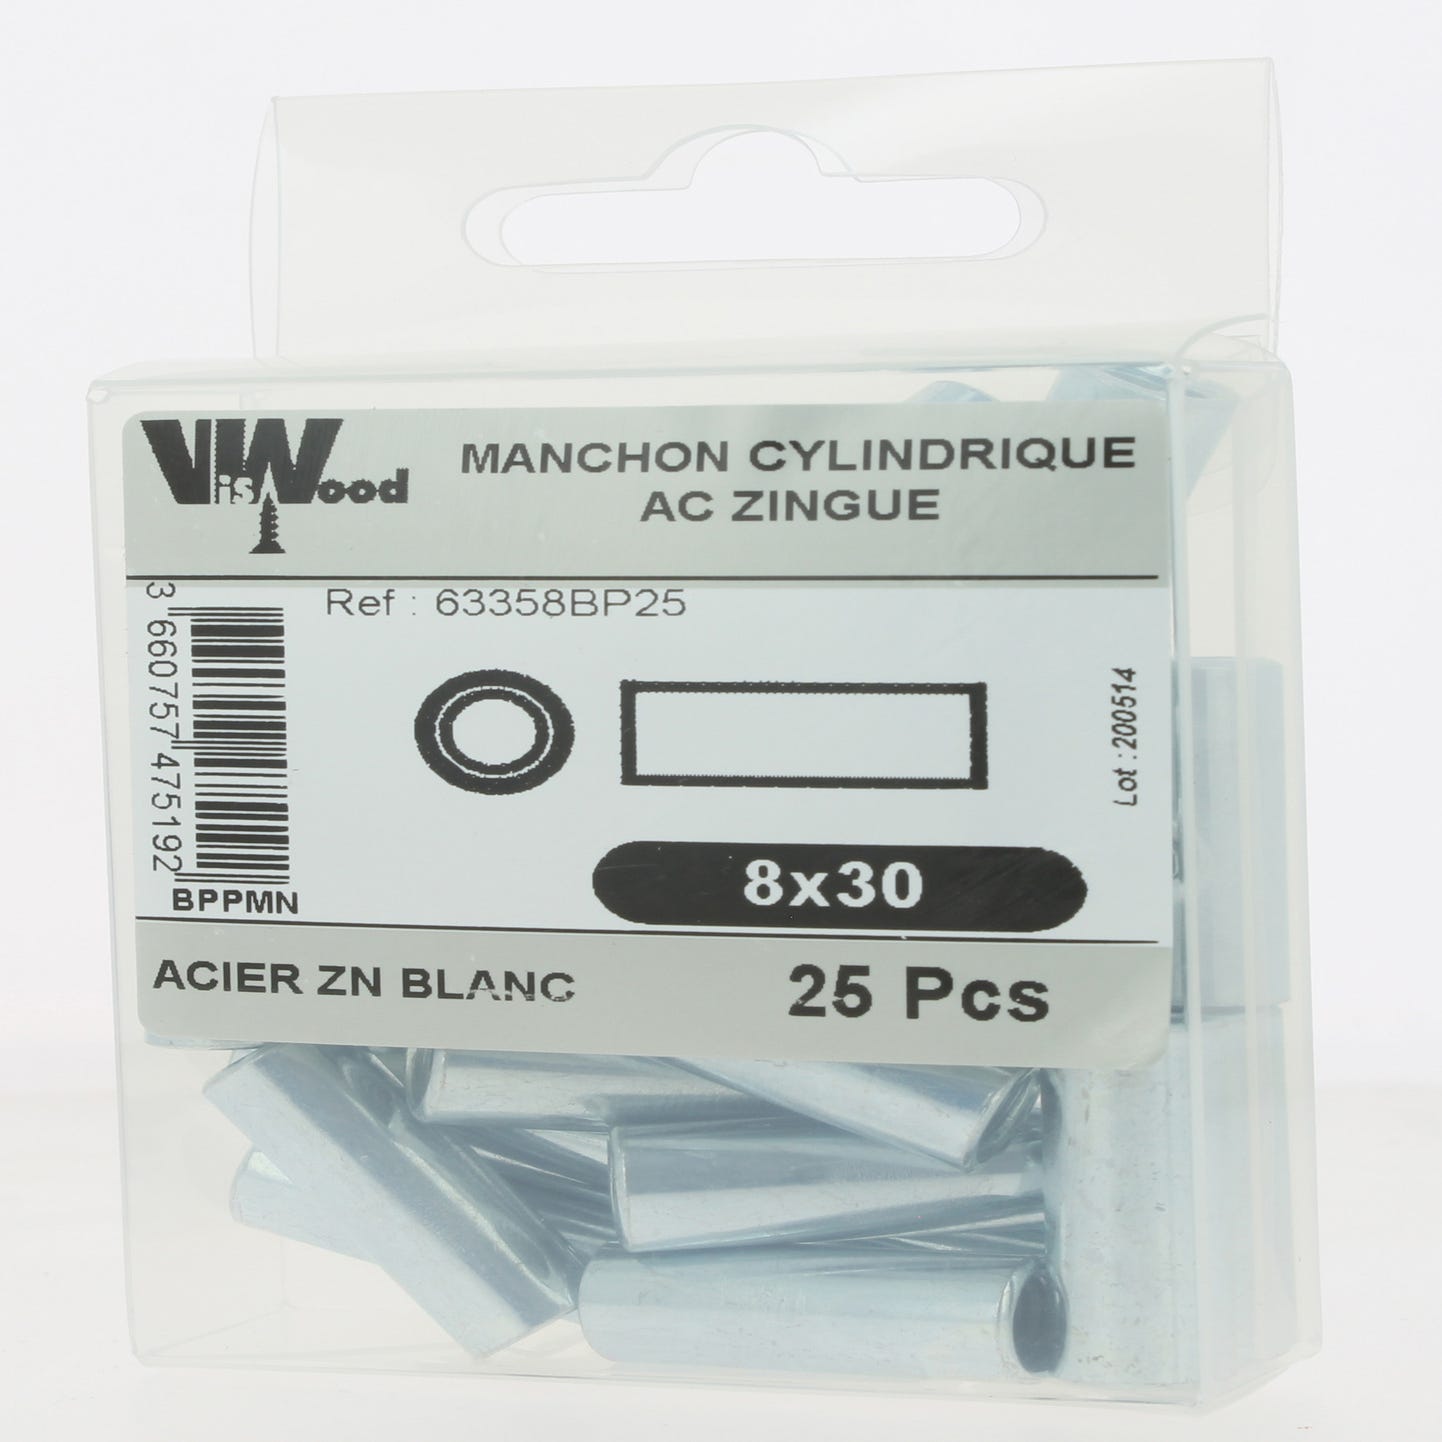 Manchons cylindrique ZG M8X30 25 pièces - VISWOOD 1